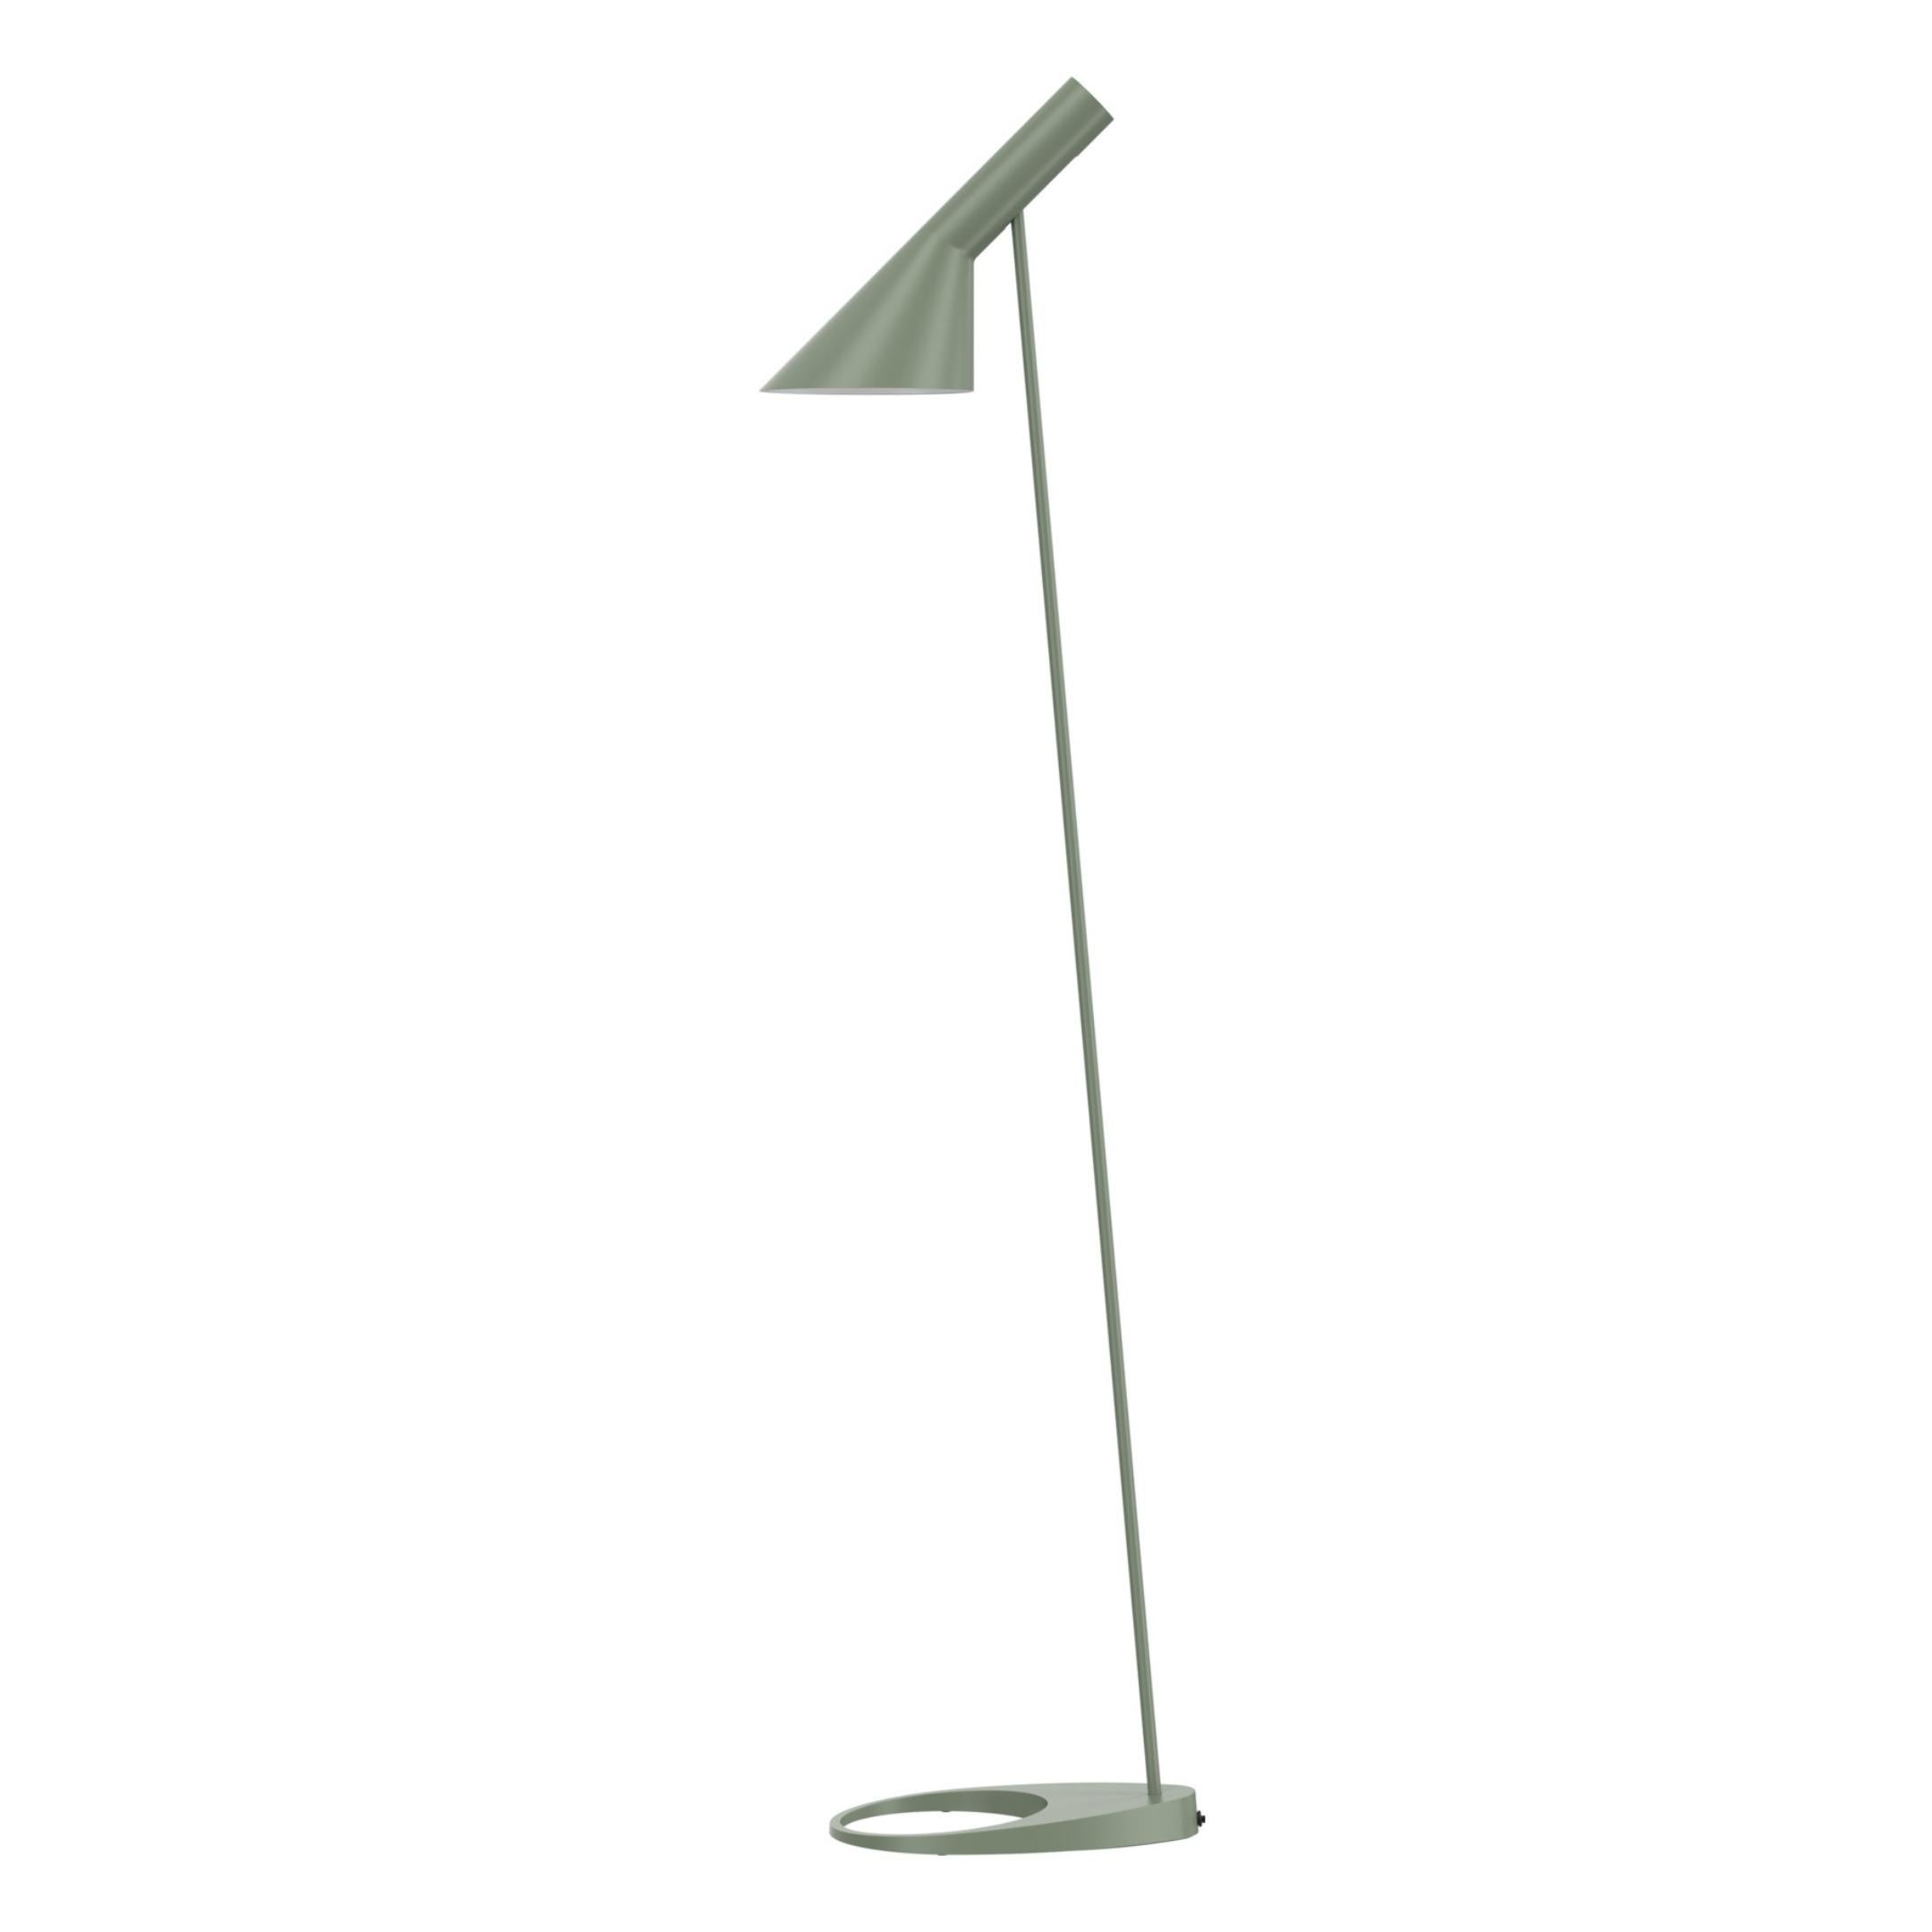 Arne Jacobsen AJ Floor Lamp in Soft Lemon for Louis Poulsen For Sale 1